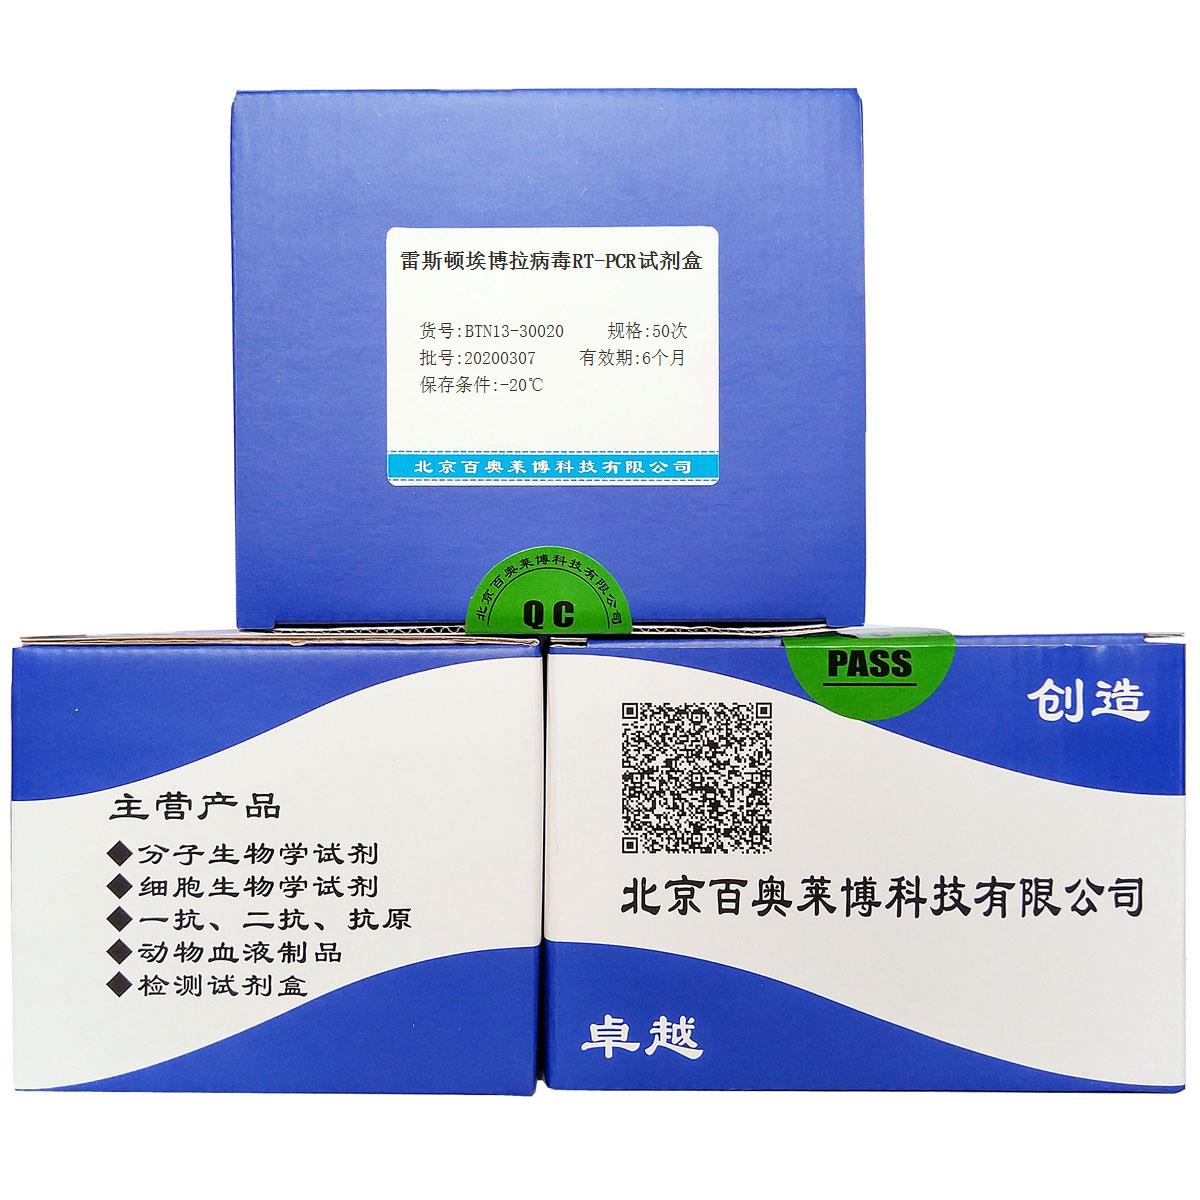 雷斯顿埃博拉病毒RT-PCR试剂盒优惠促销